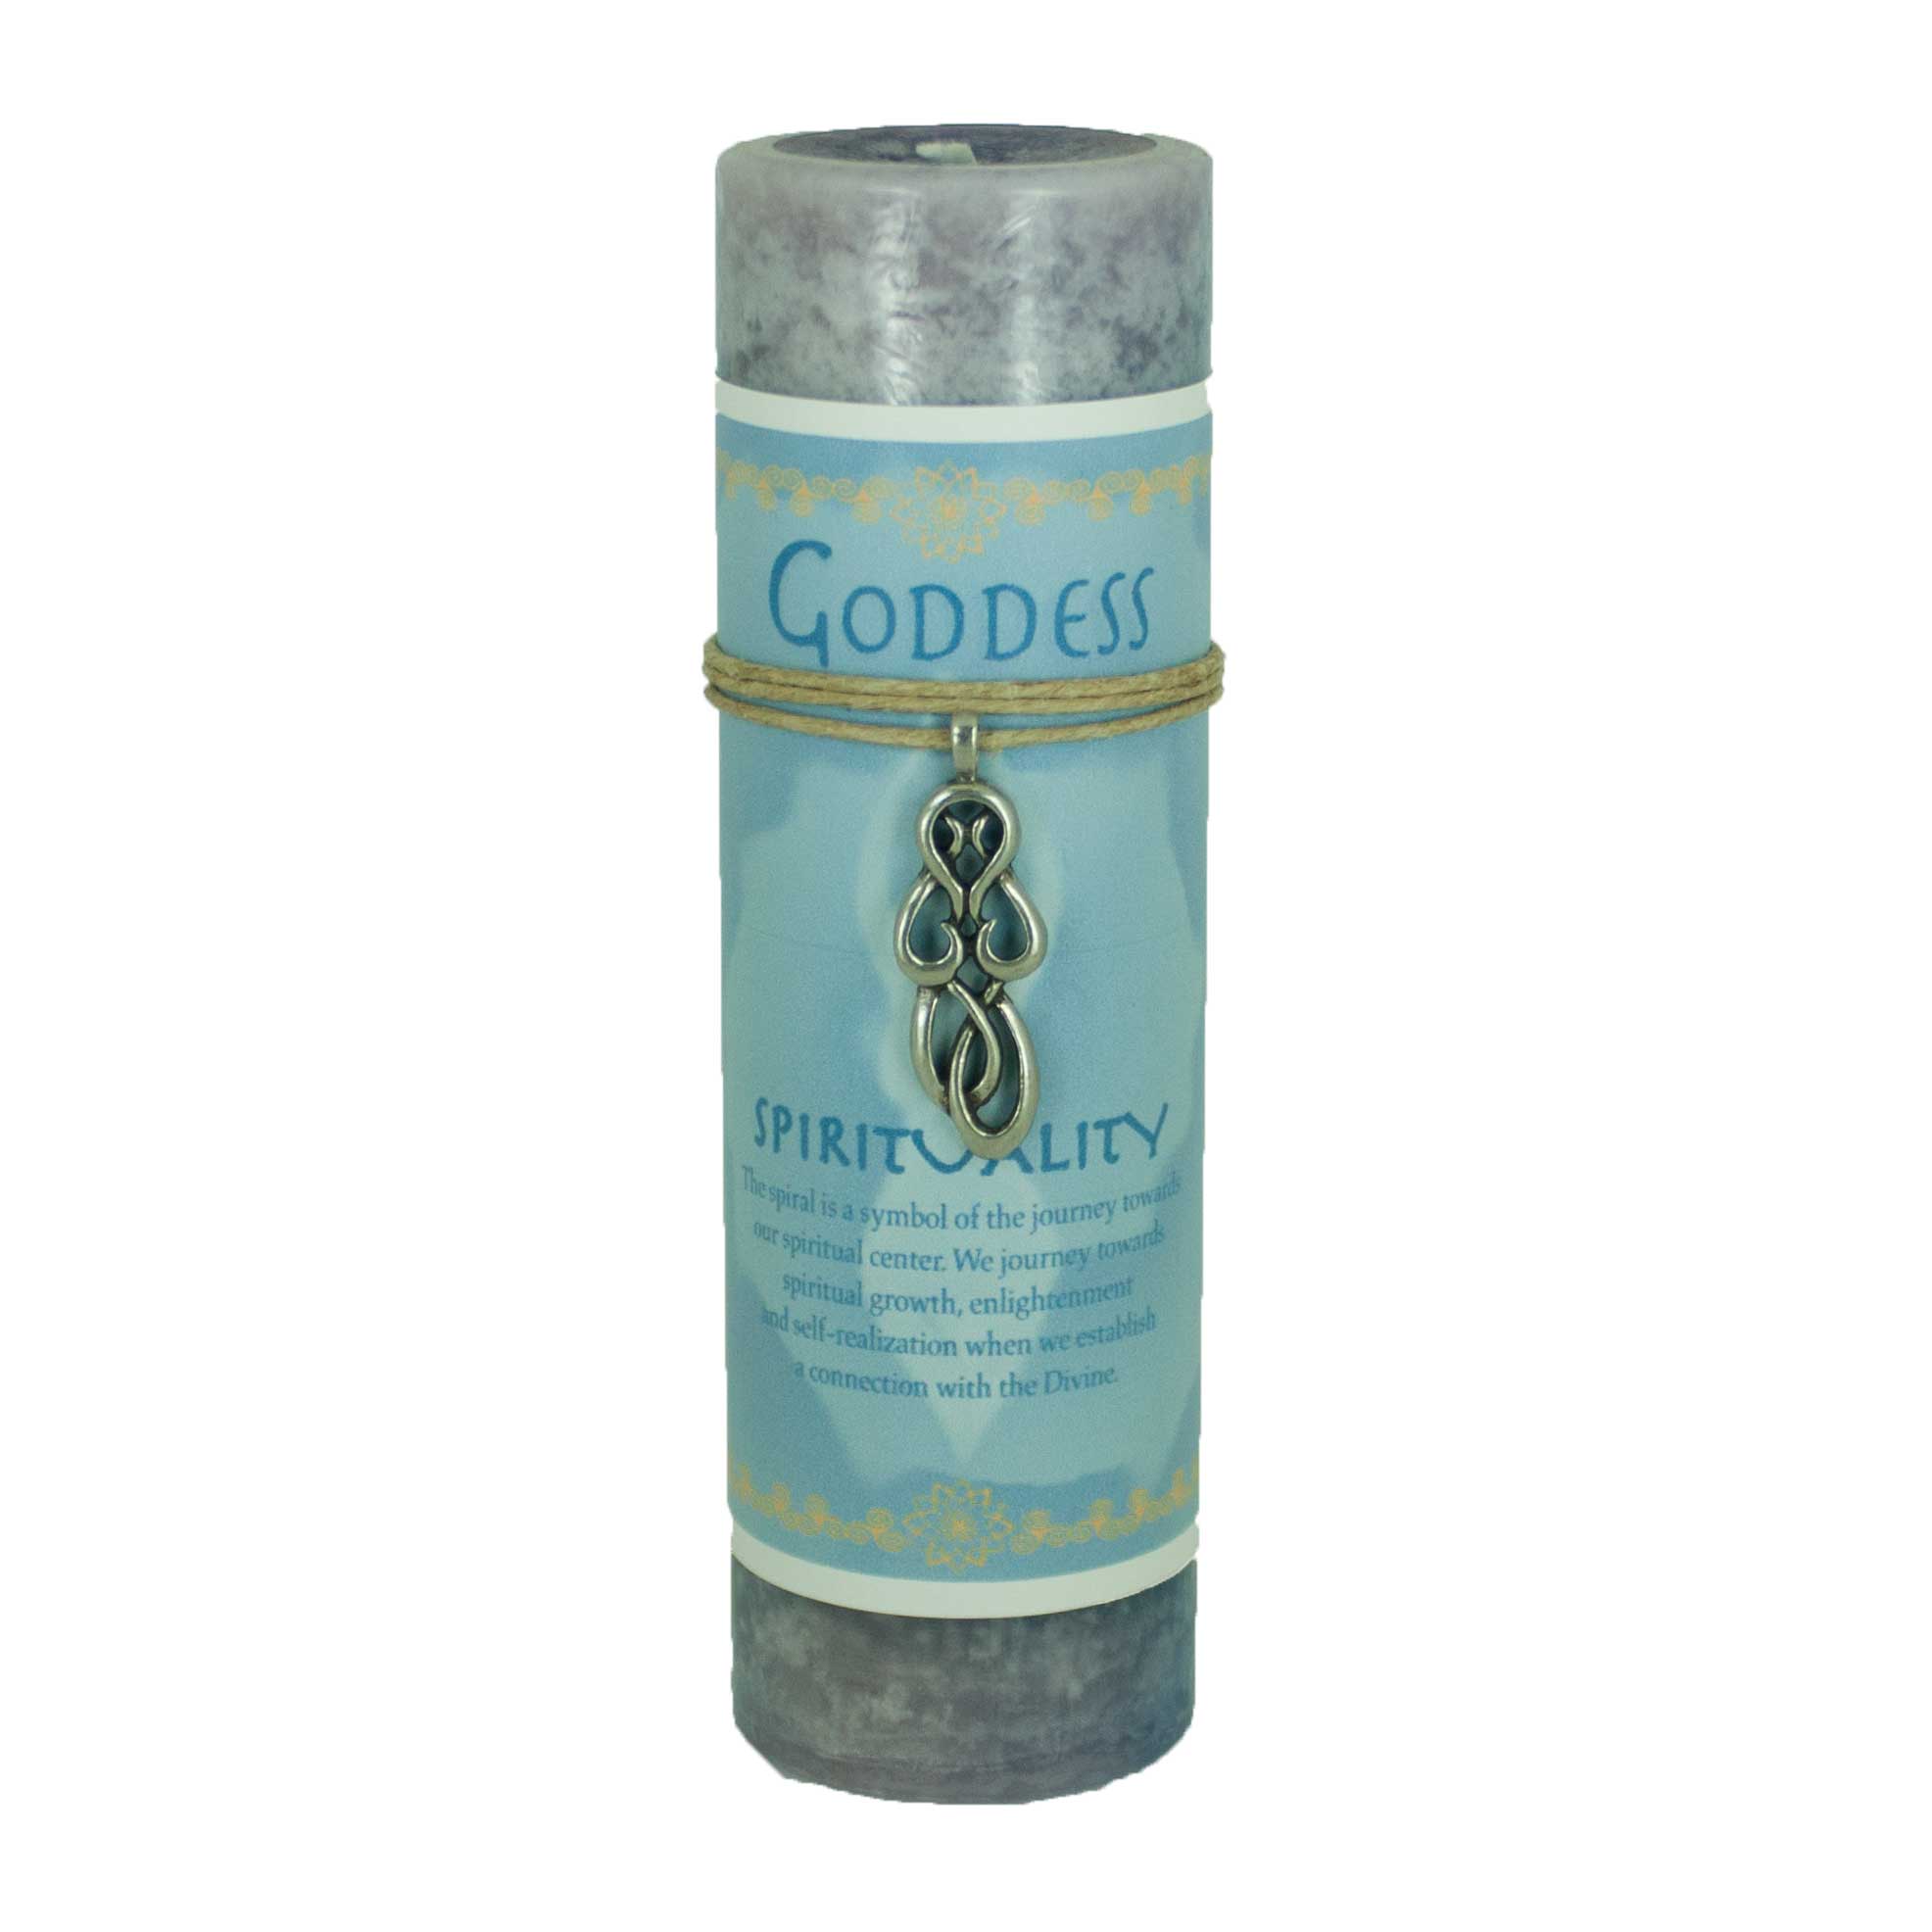 Goddess Spirituality Candle with Pendant - 13 Moons